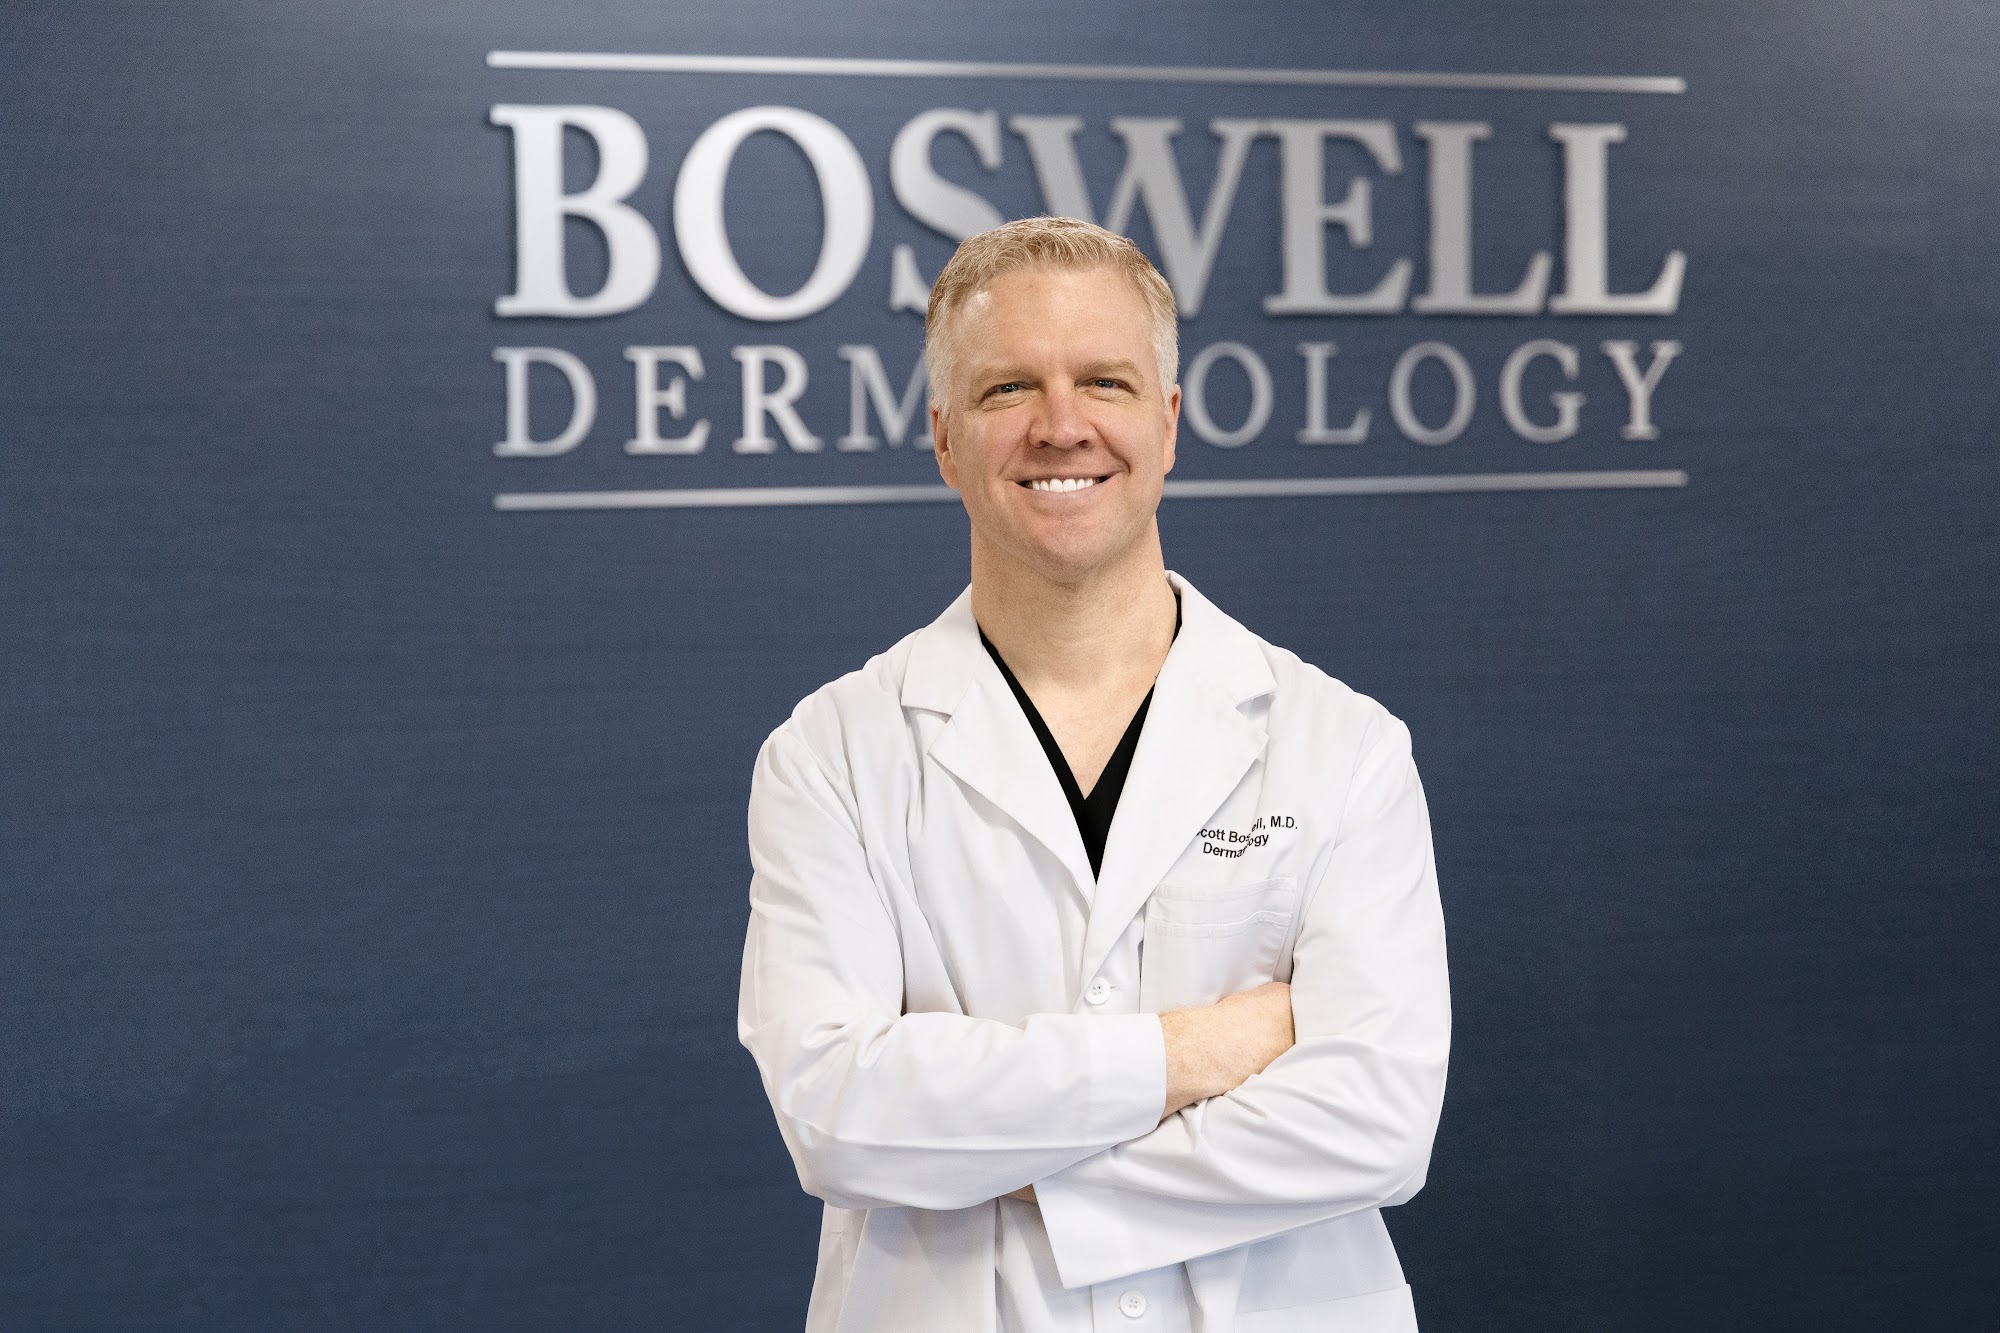 Boswell Dermatology